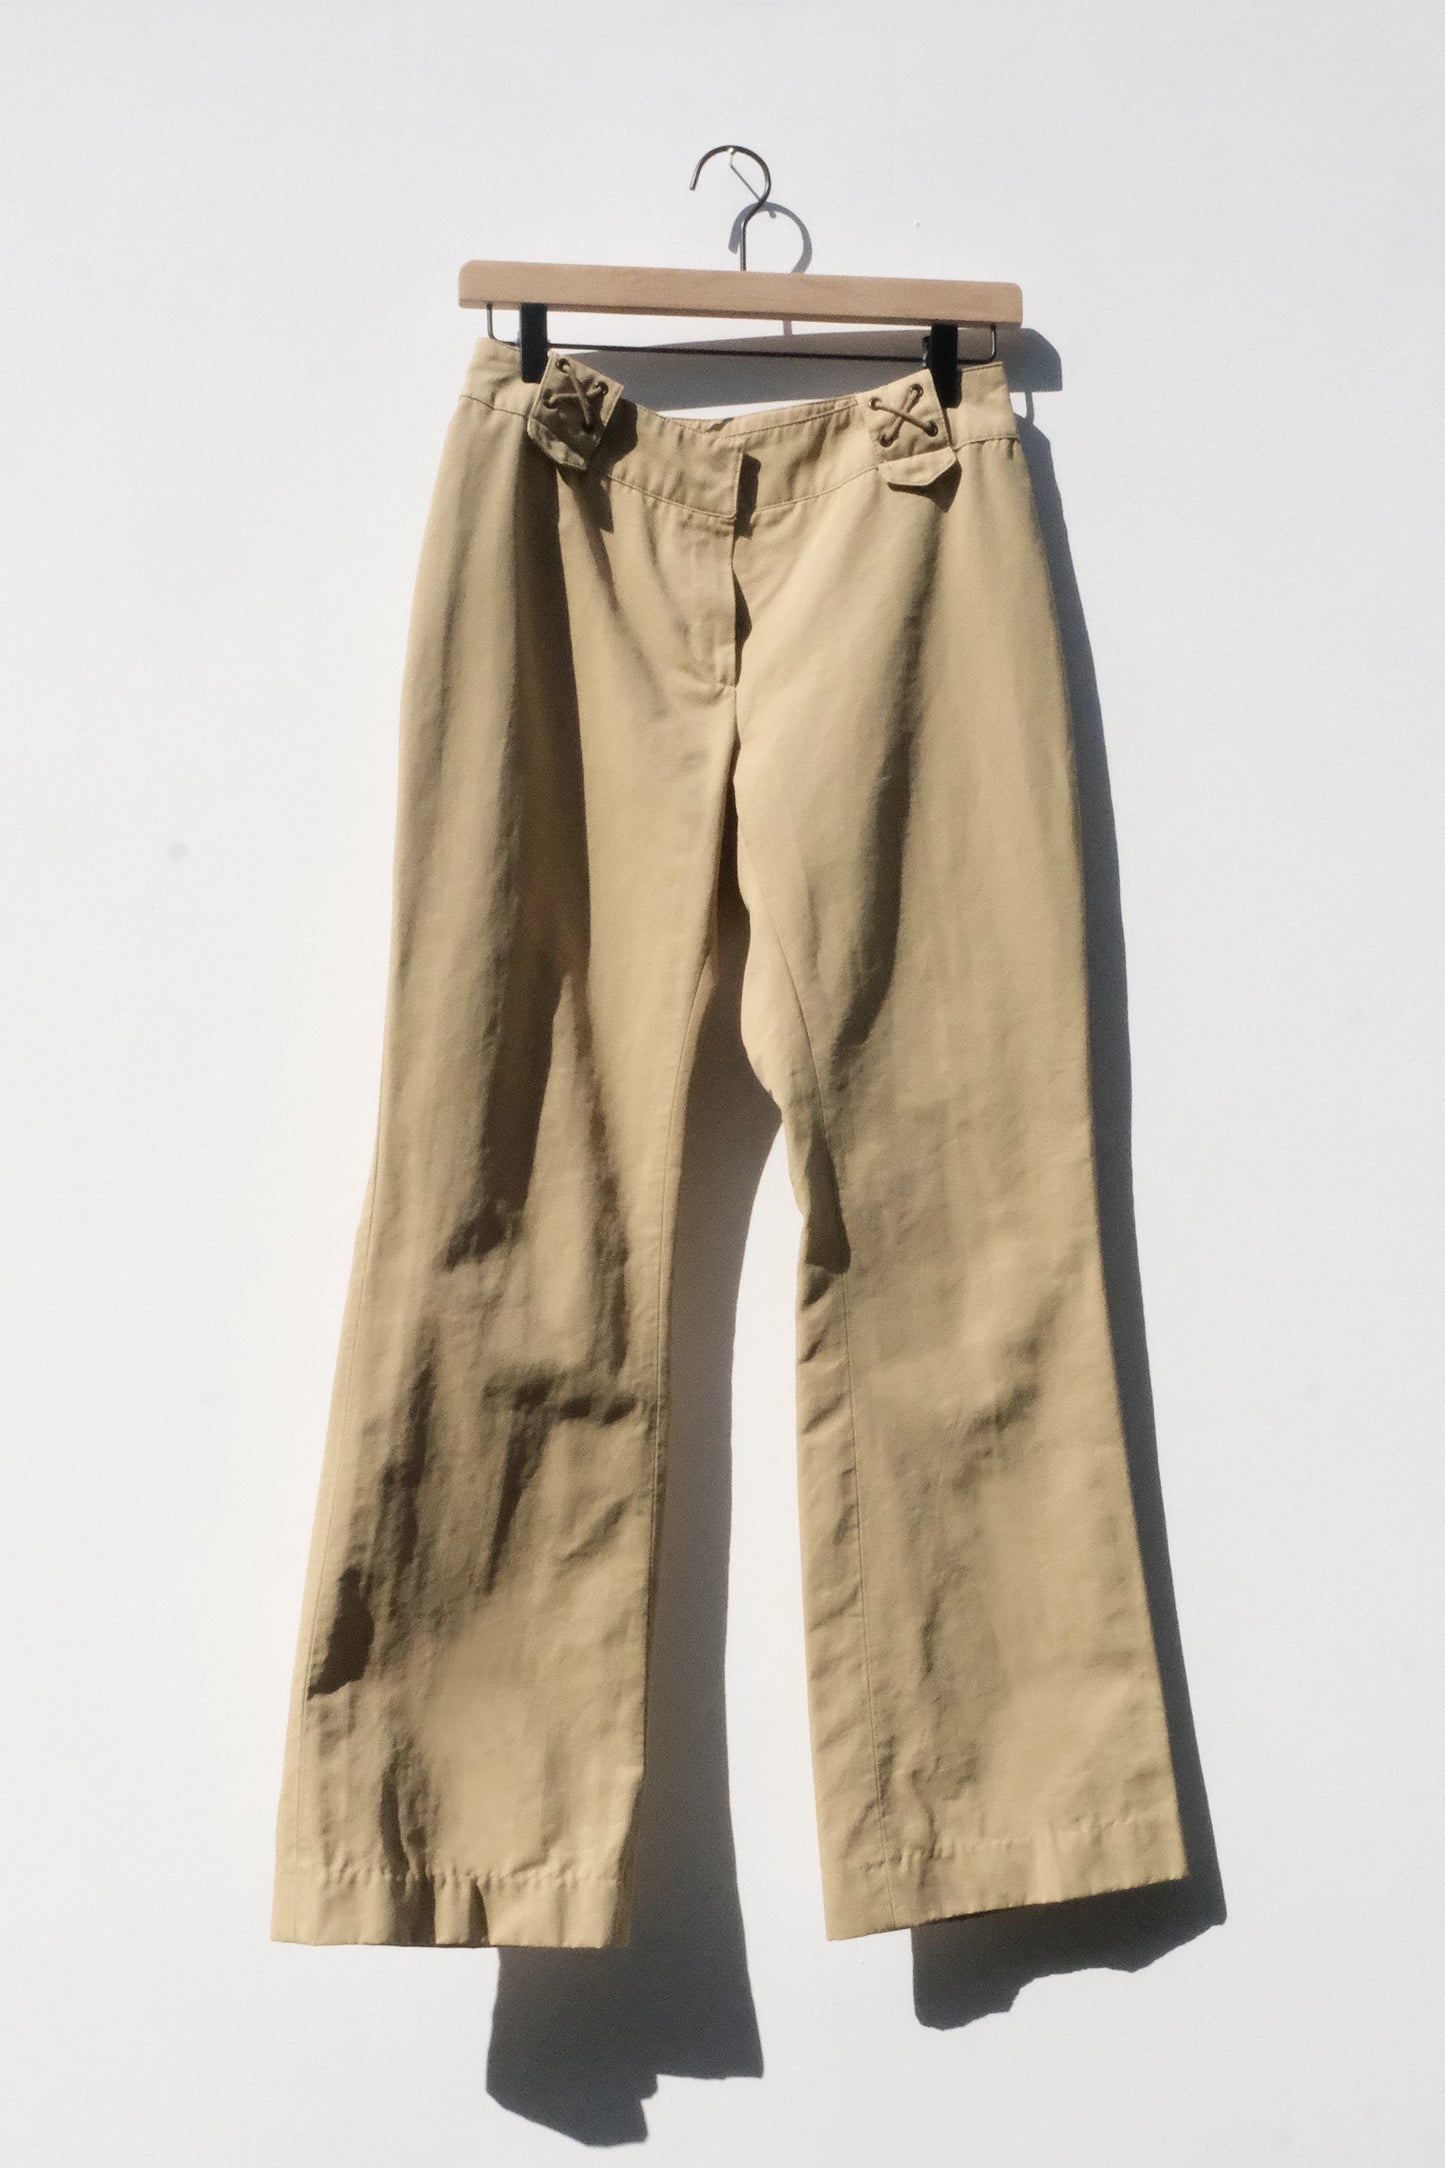 Morgan De Toi Lace Up Low Rise Camel Bootcut Pants, 26 x 29” US 4 Y2K 90’s